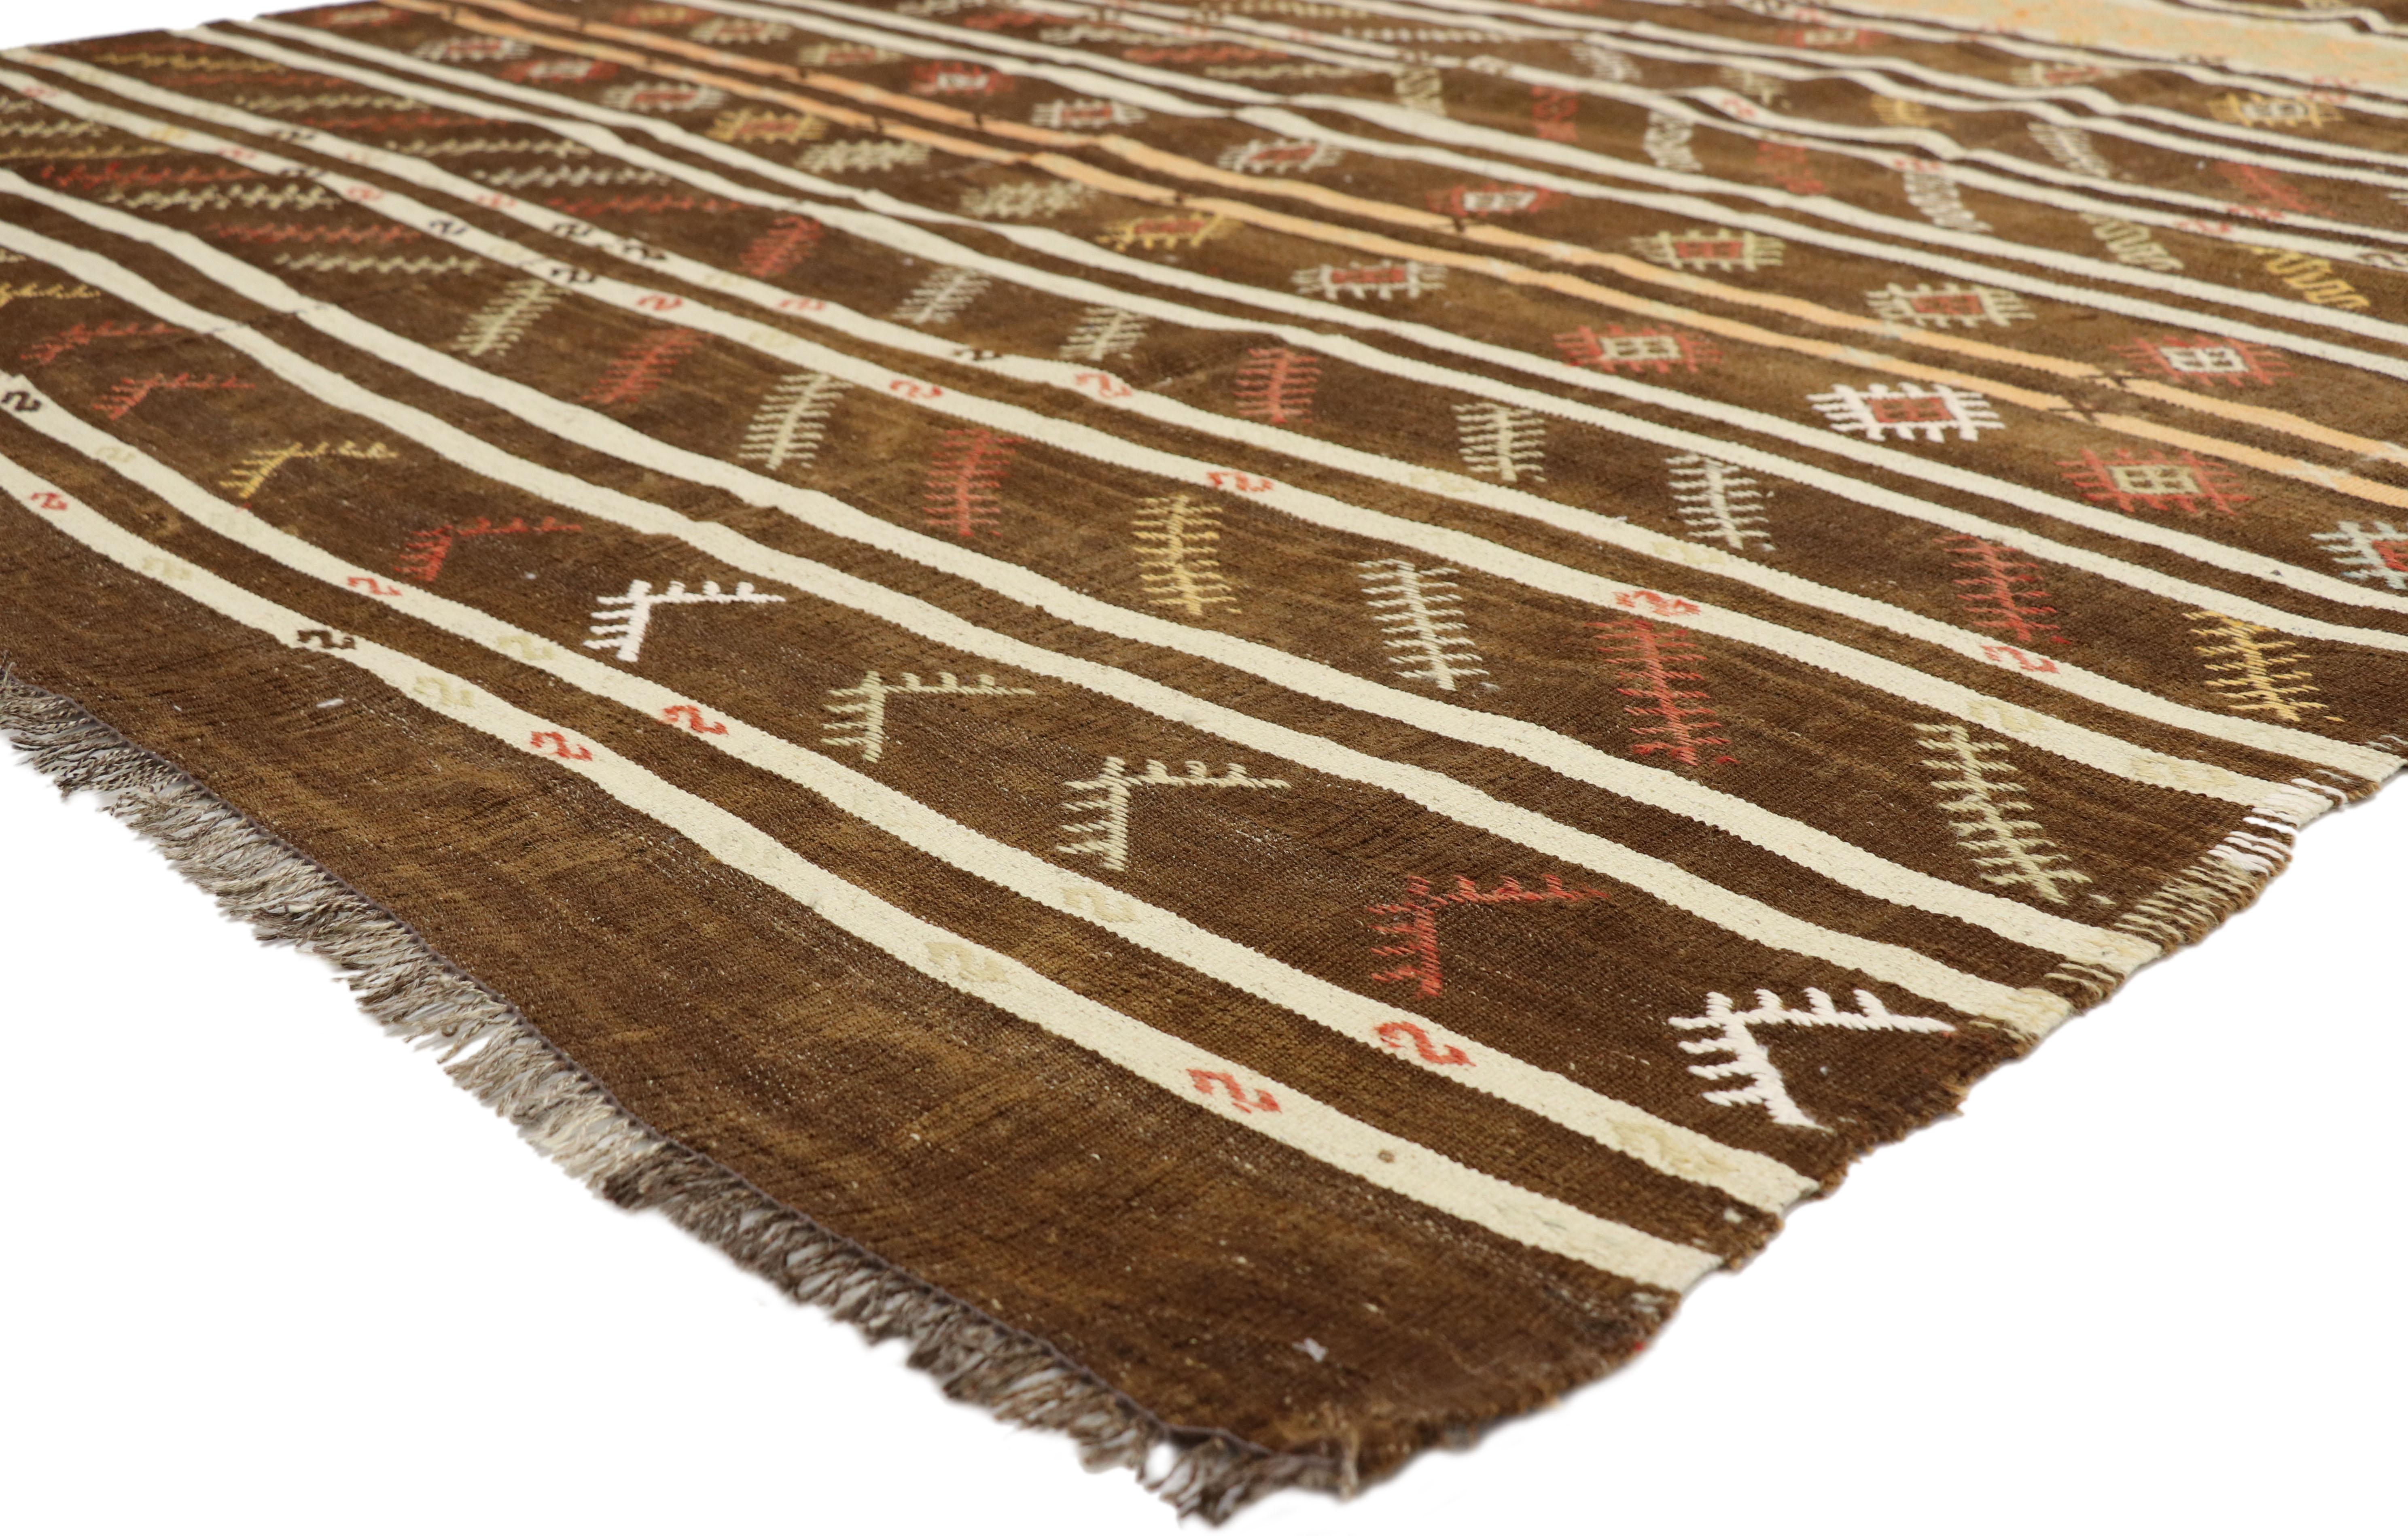 51333, gestreifter türkischer Kelim-Teppich im böhmischen Tribal-Stil, Flachgewebe-Teppich. Dieser handgewebte, gestreifte türkische Kilim-Teppich aus Wolle zeigt zweifarbige Bänder mit symbolischen türkischen Motiven auf einem warmen braunen